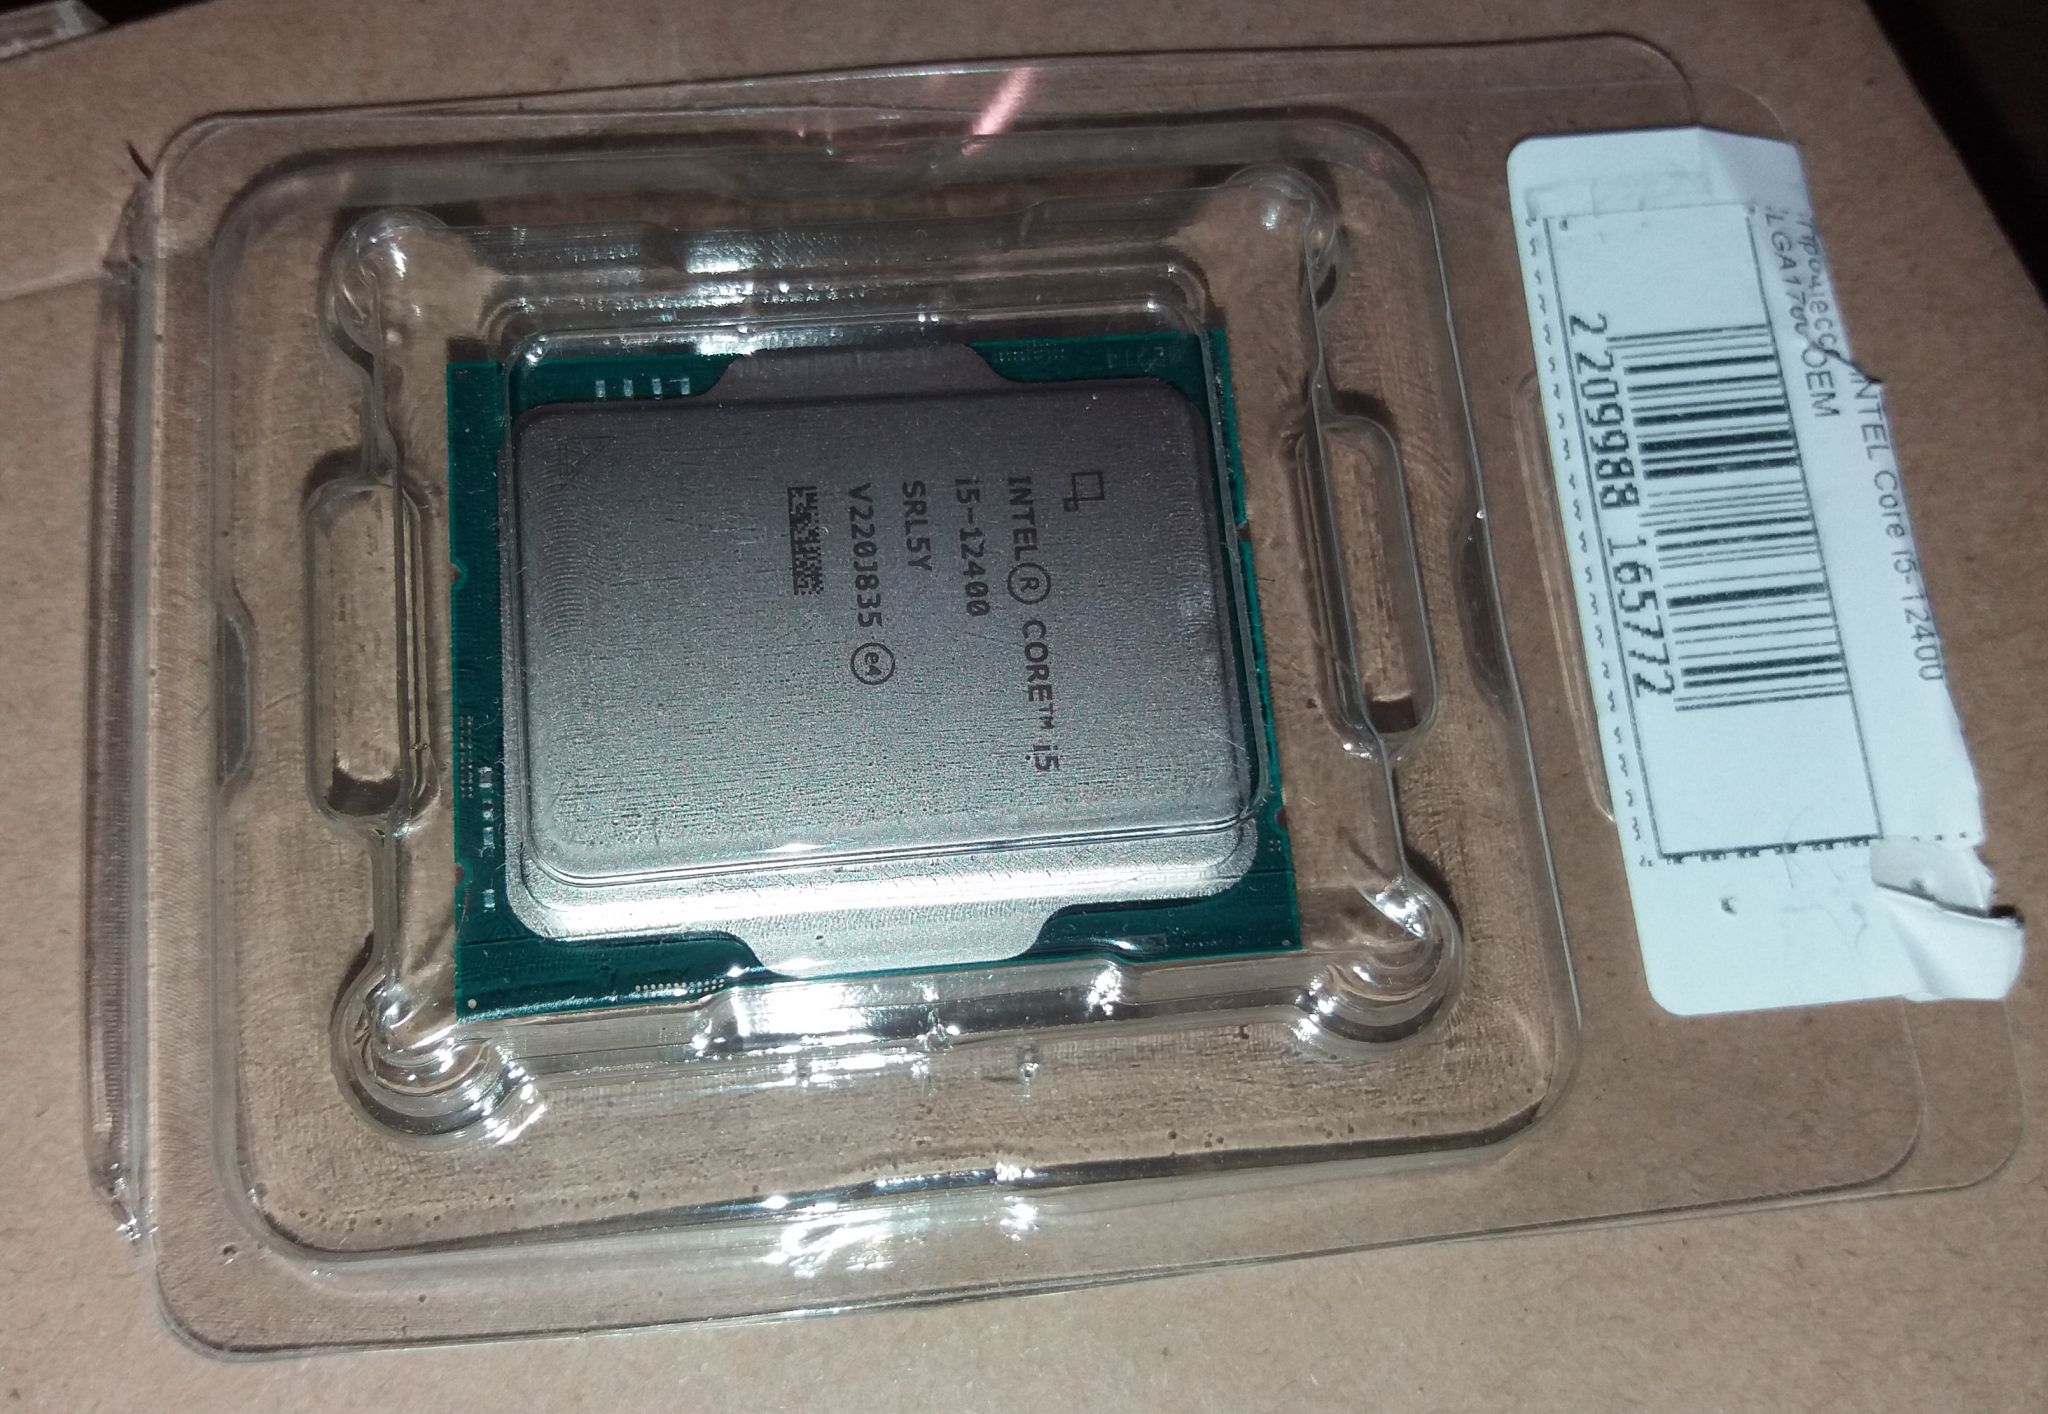 Процессор Intel Core i5 12400, LGA 1700, OEM [cm8071504650608 srl5y] –  купить в Ситилинк